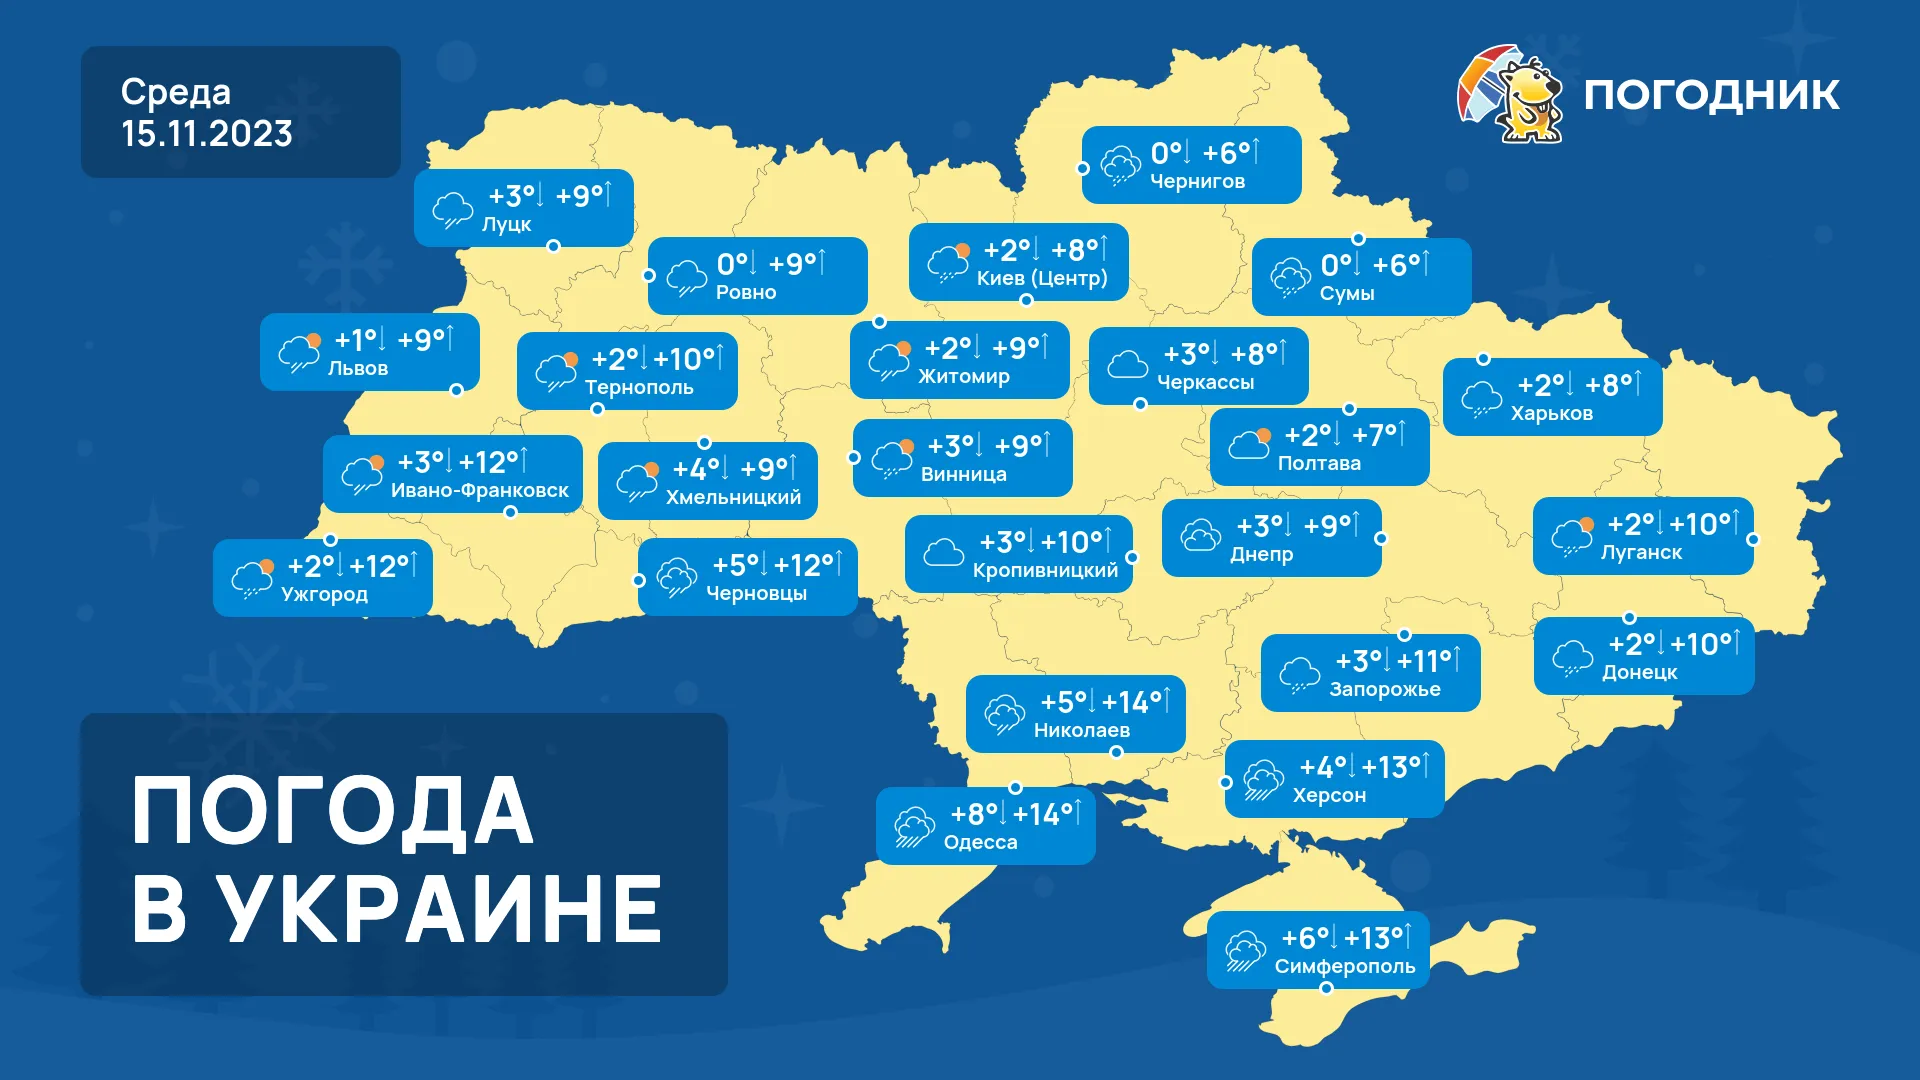 Погодник - дожди в Украине продолжатся, погода на три дня 13-15 ноября